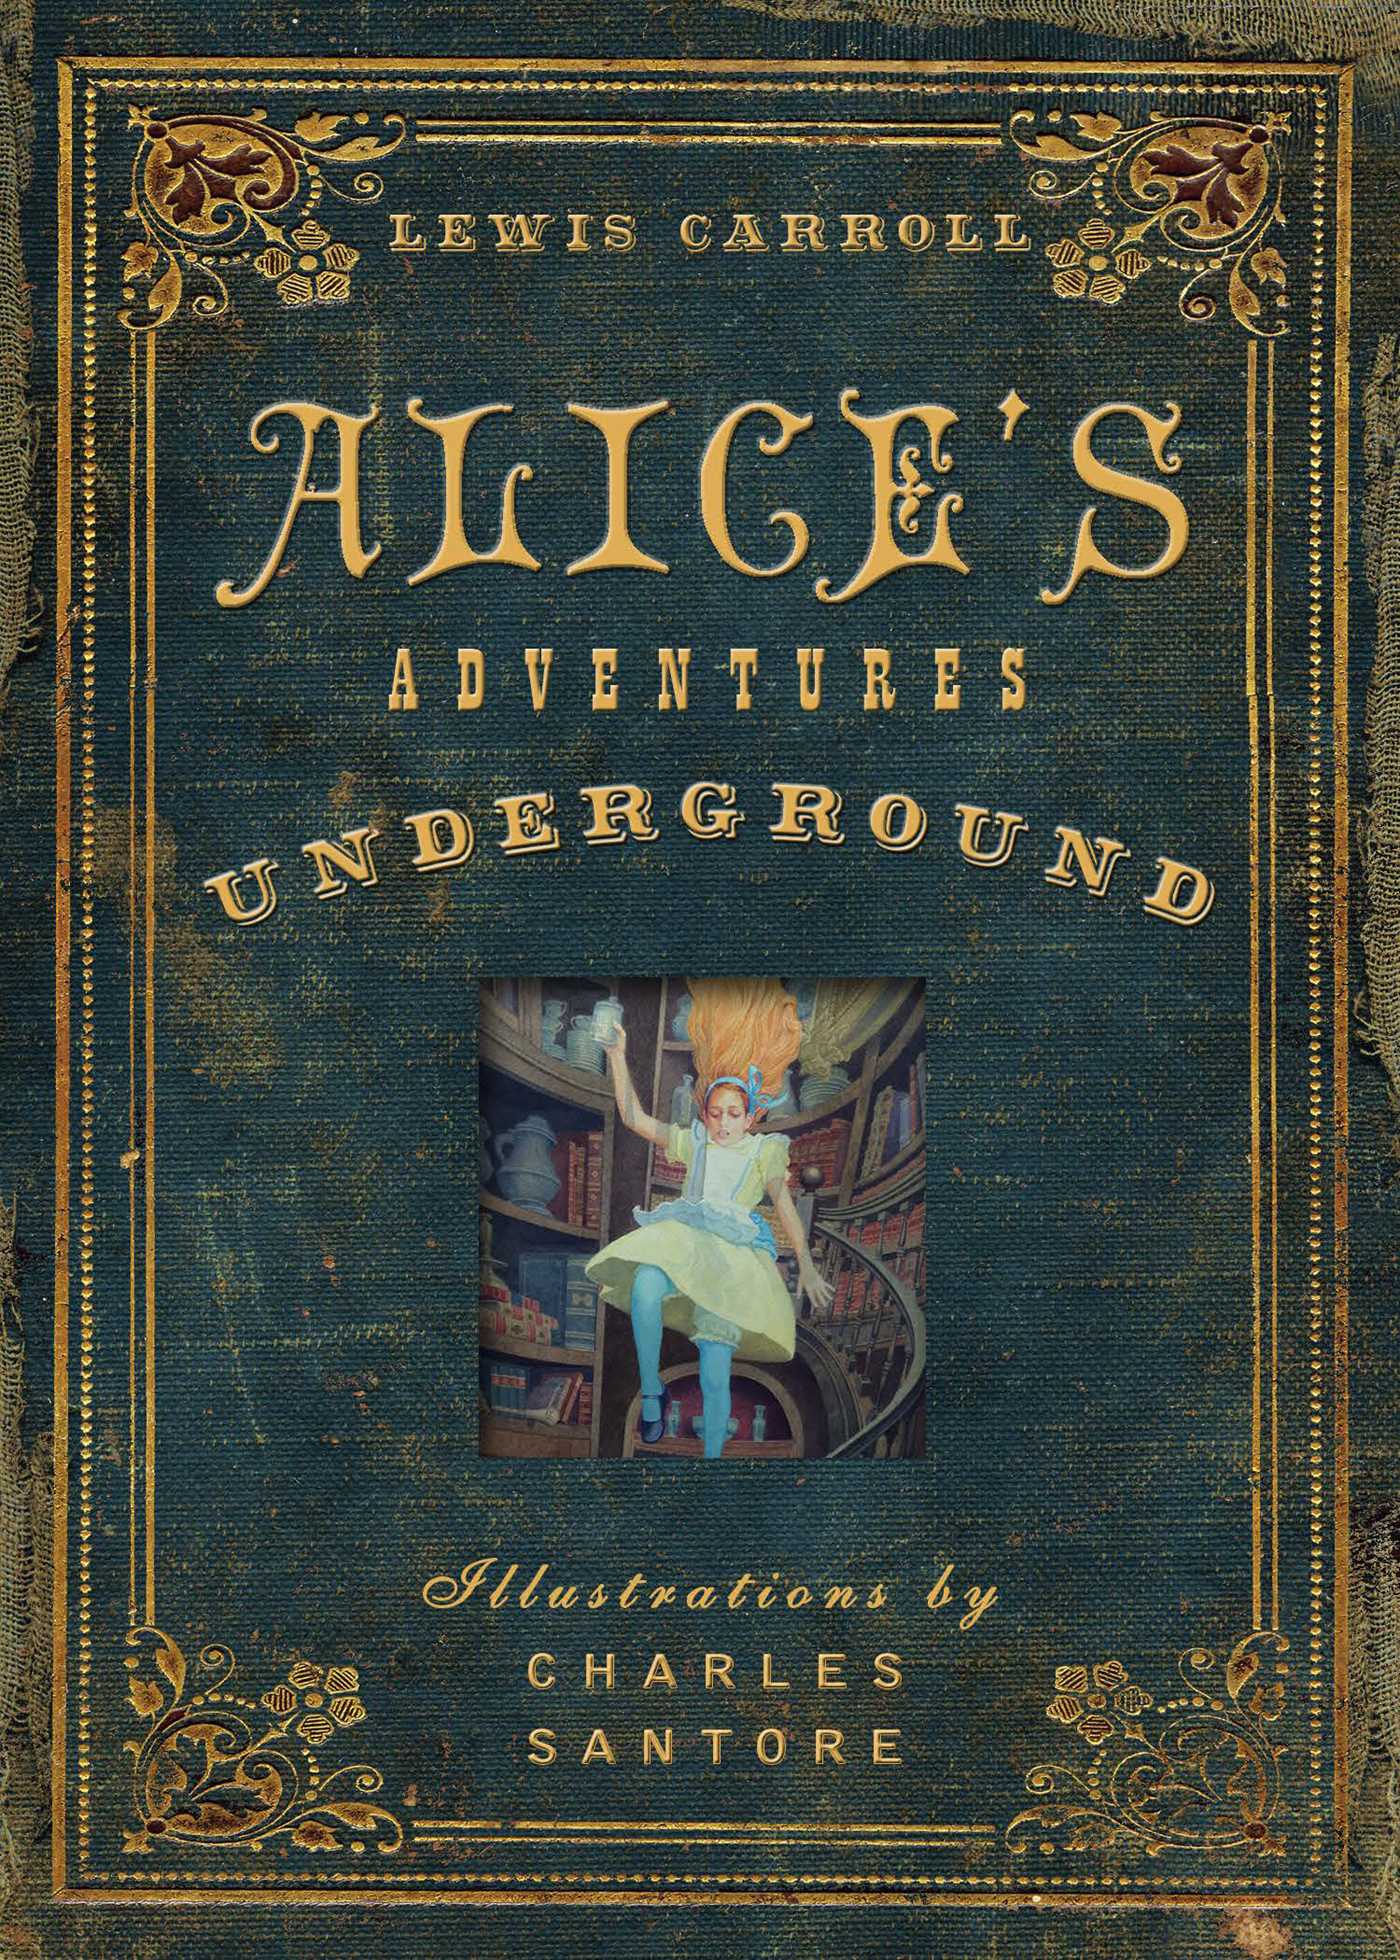 alices-adventures-underground-9781604335729_hr